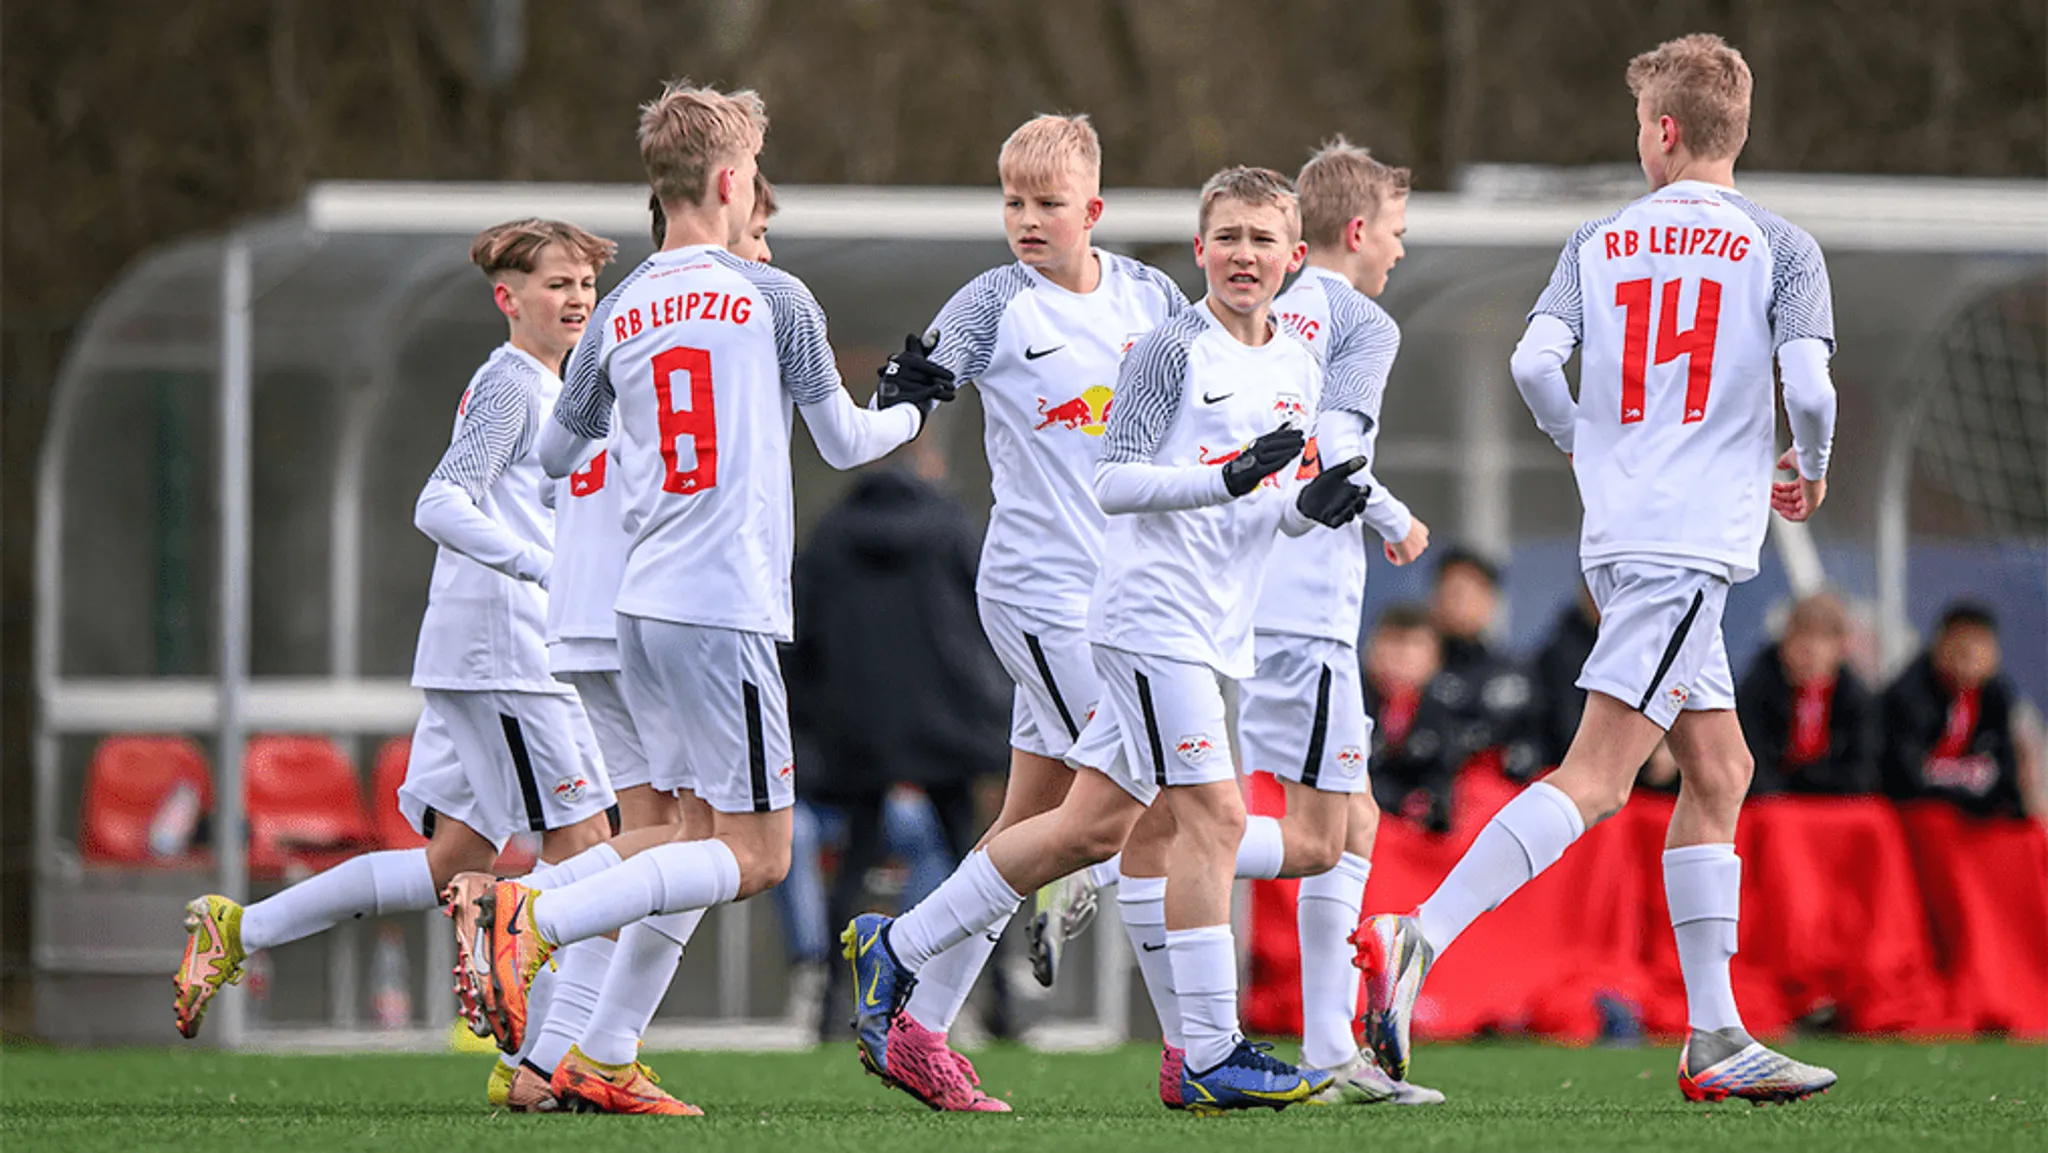 RB Leipzig sucht Gastfamilien für Spieler im Alter von 13-15 Jahren.